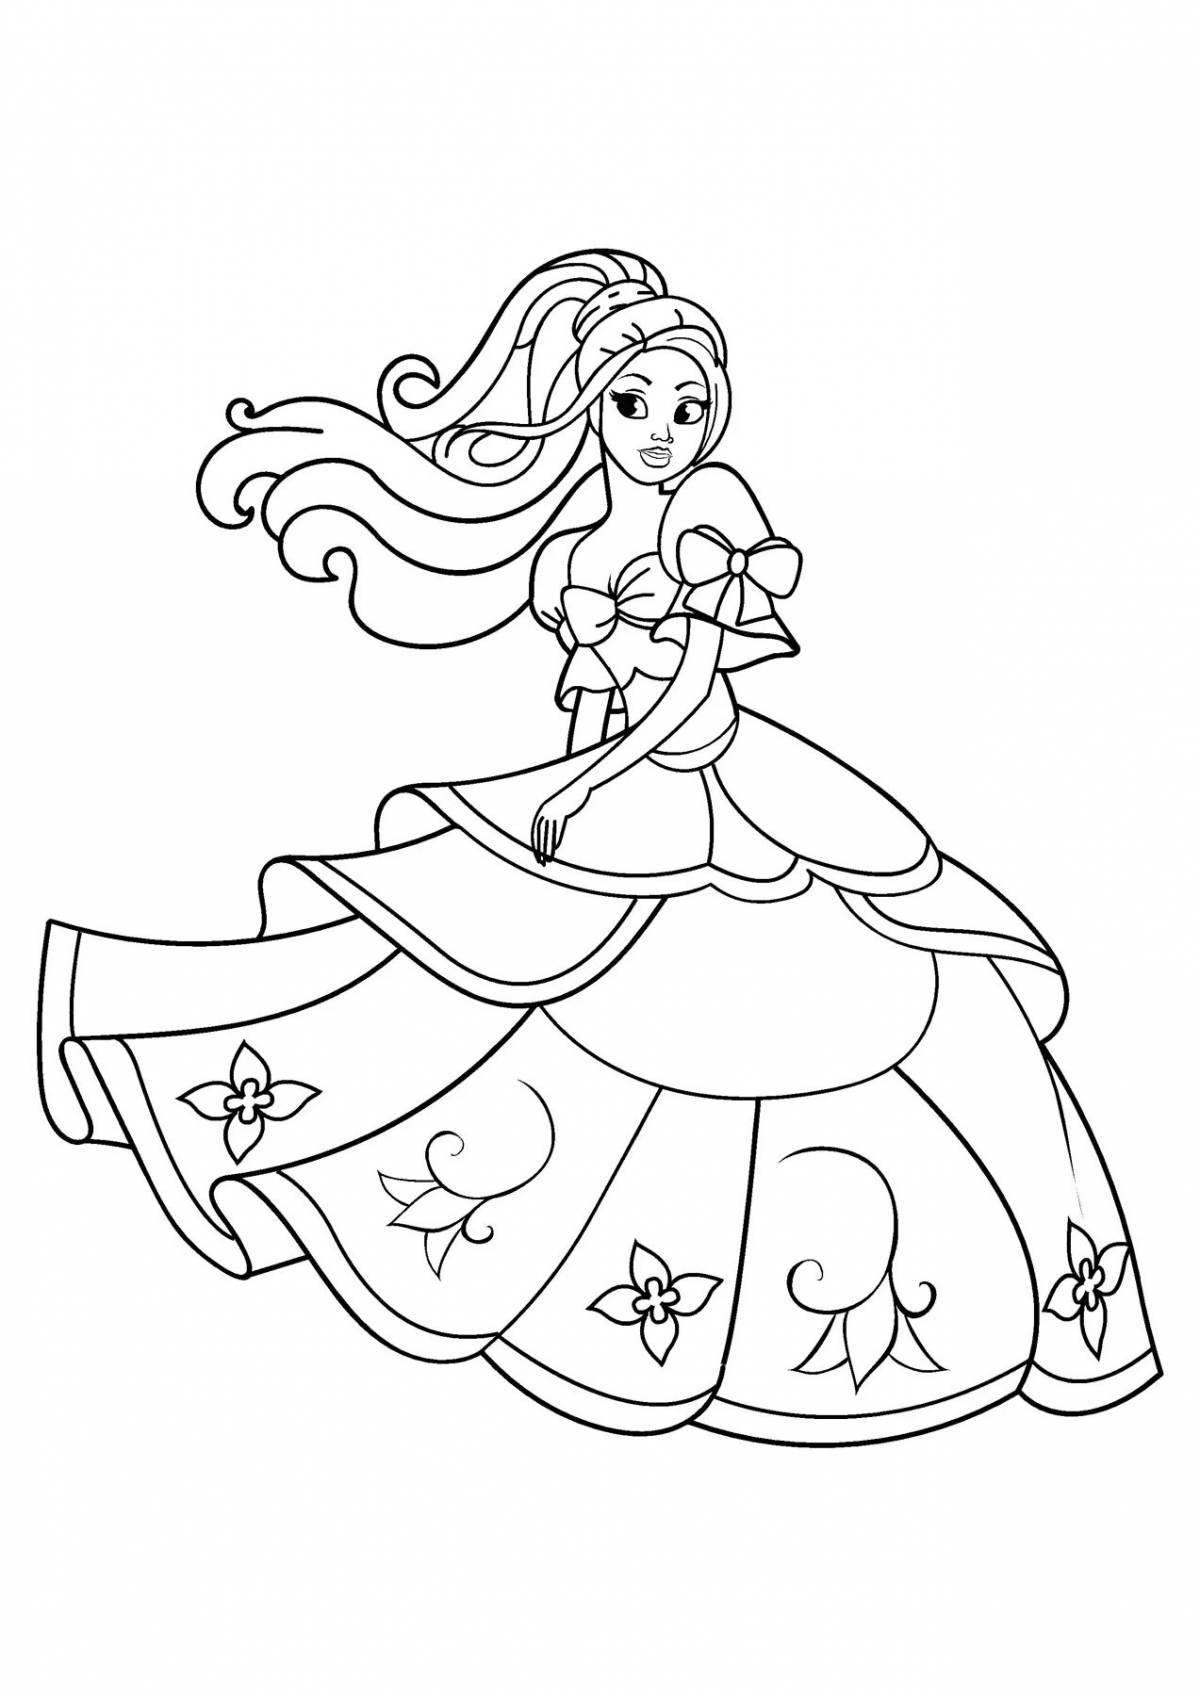 Joyful coloring princess seal